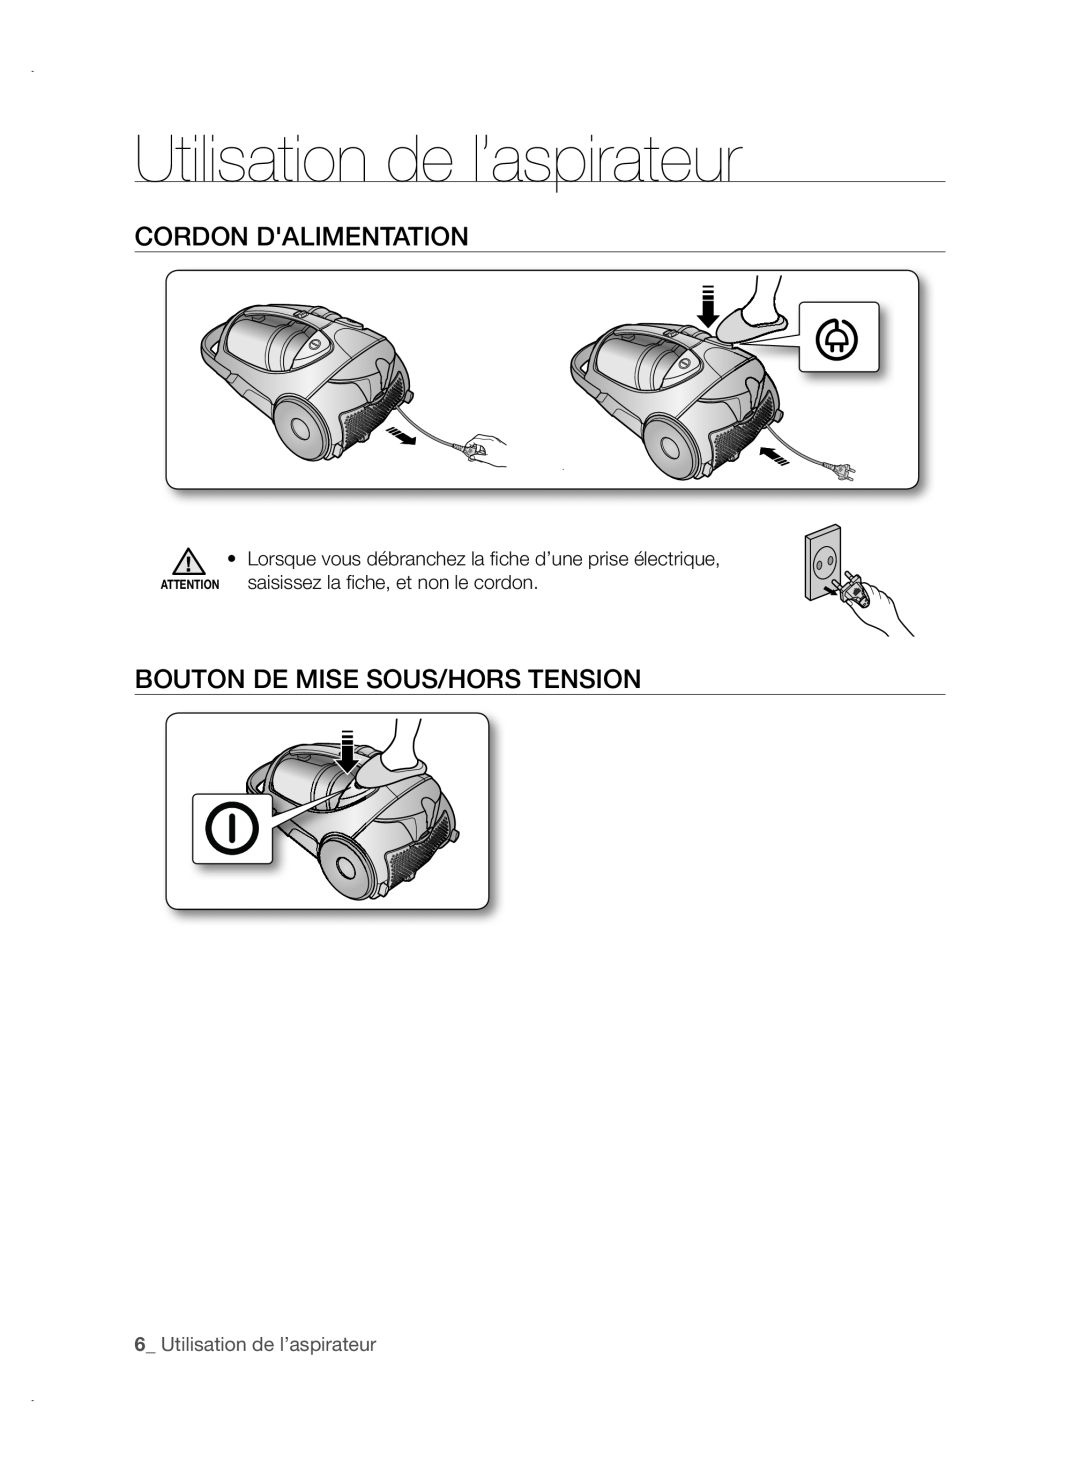 Samsung VCC88P0H1B user manual Utilisation de l’aspirateur, Cordon Dalimentation, Bouton De Mise Sous/Hors Tension 